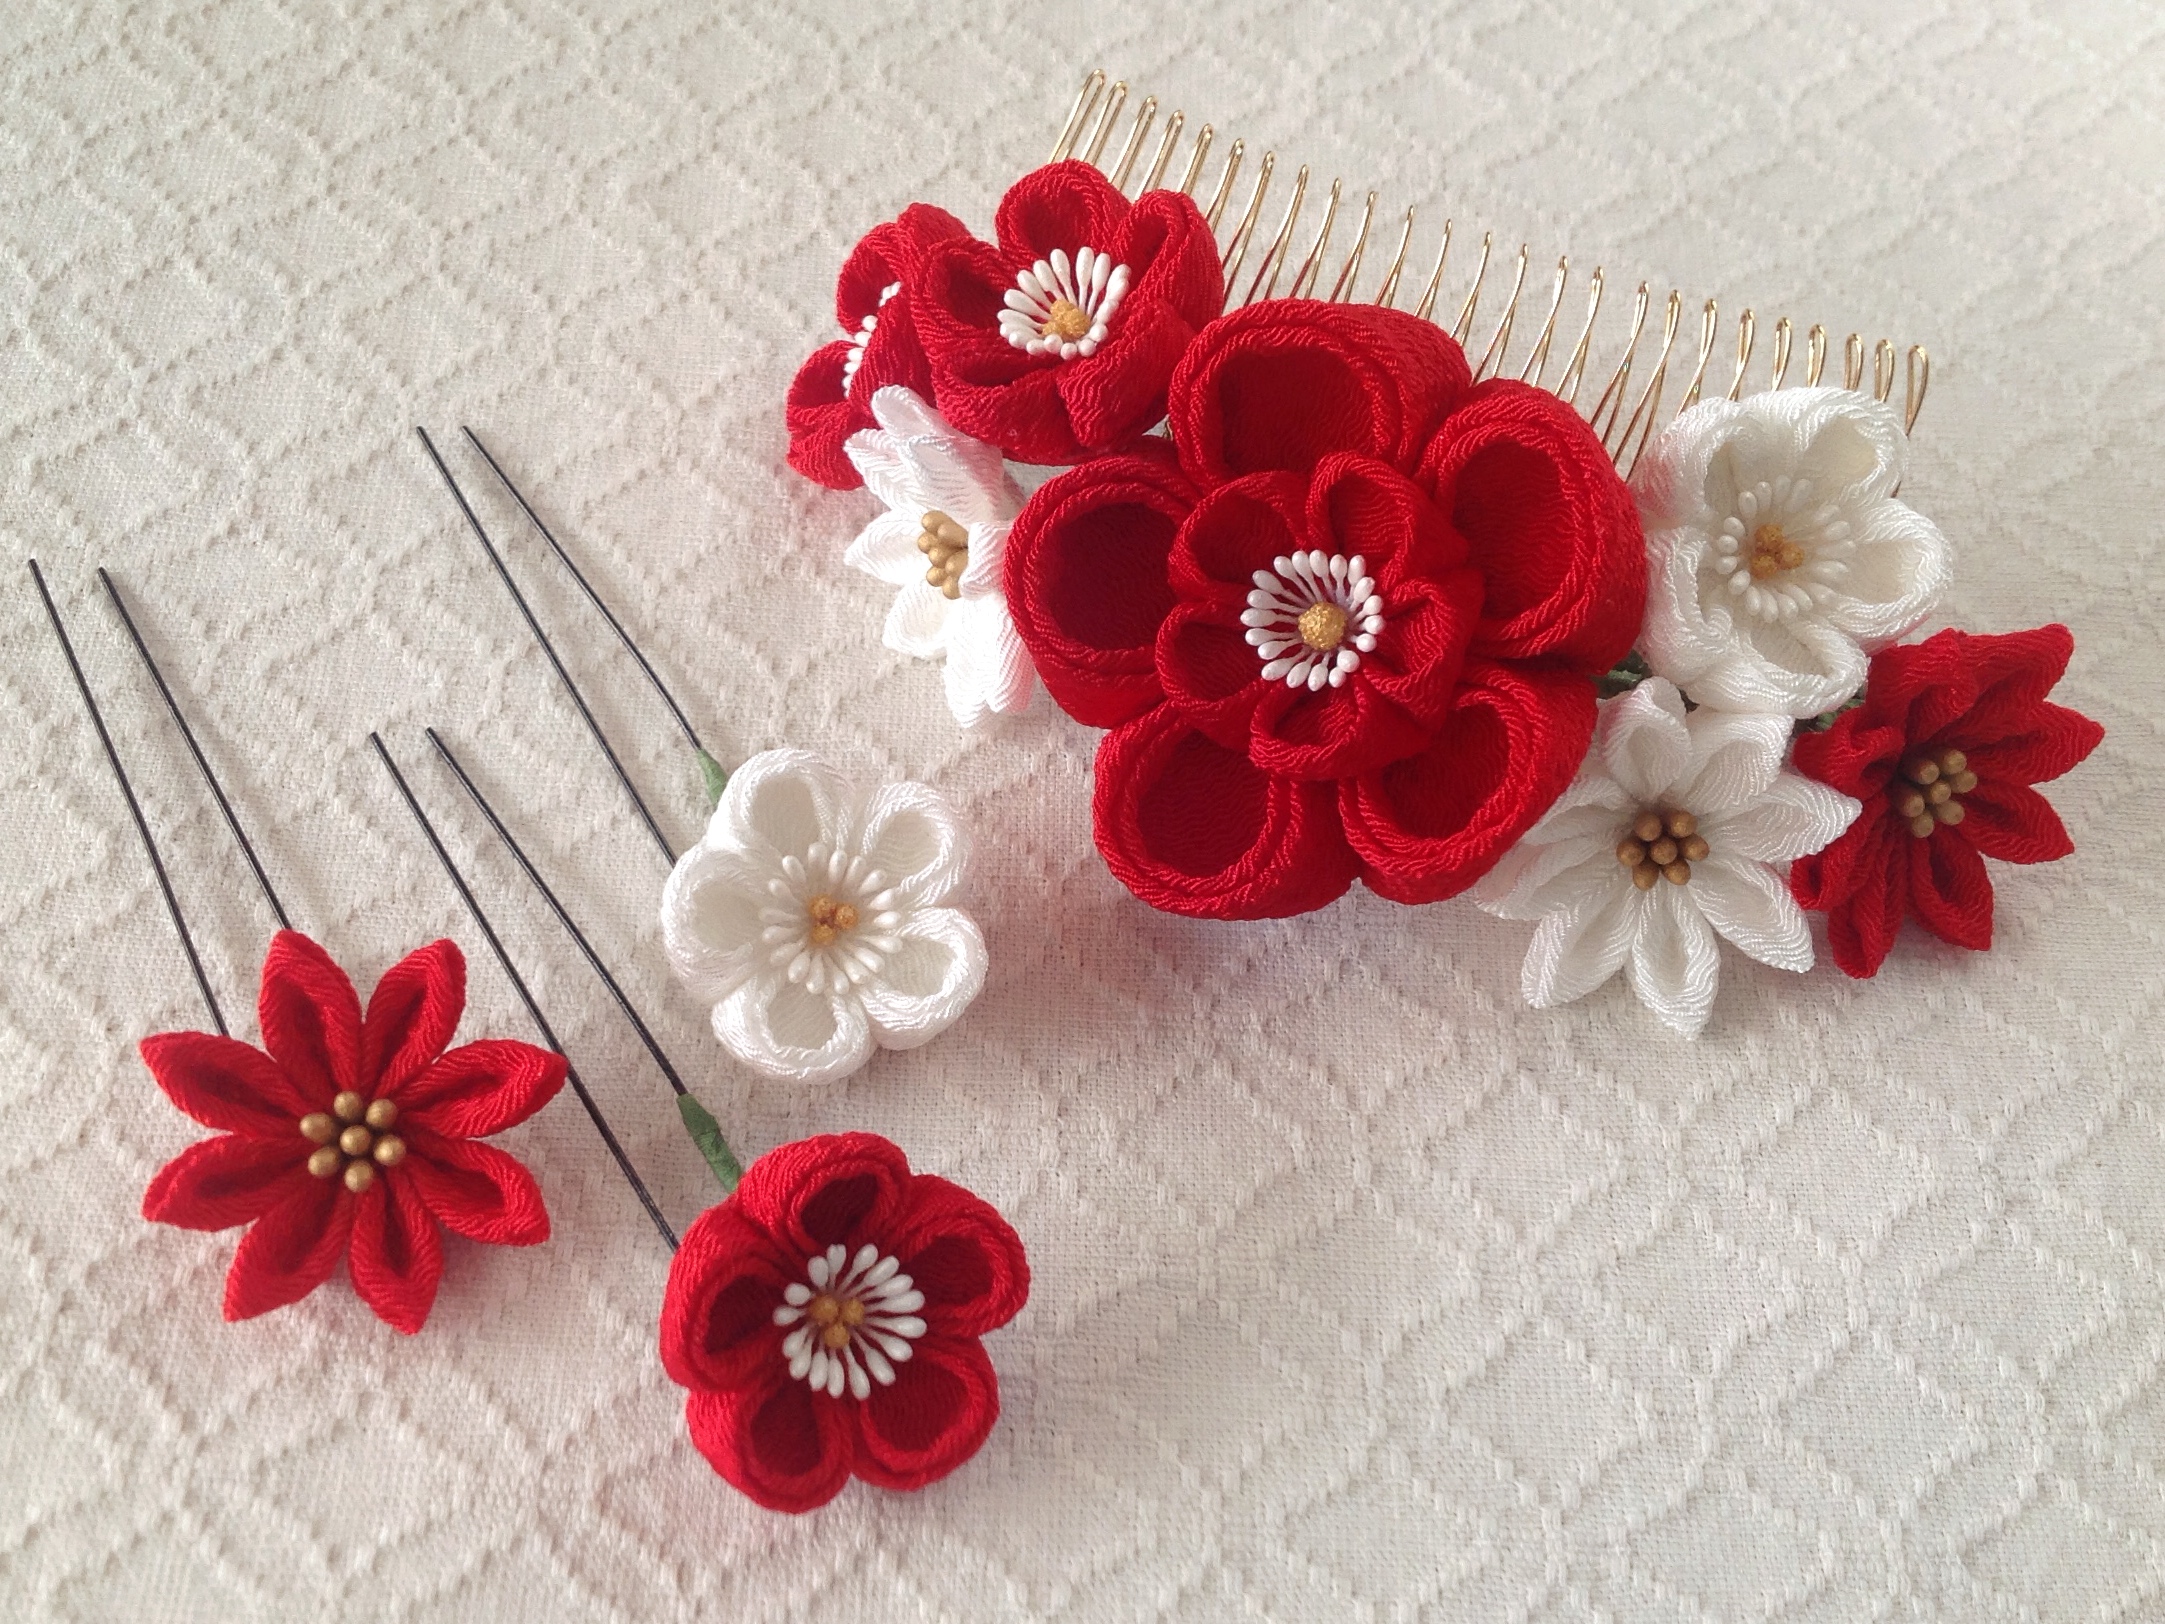 つまみ細工 花のuピン付き梅と小菊のコーム 大 赤と白 Iichi ハンドメイド クラフト作品 手仕事品の通販